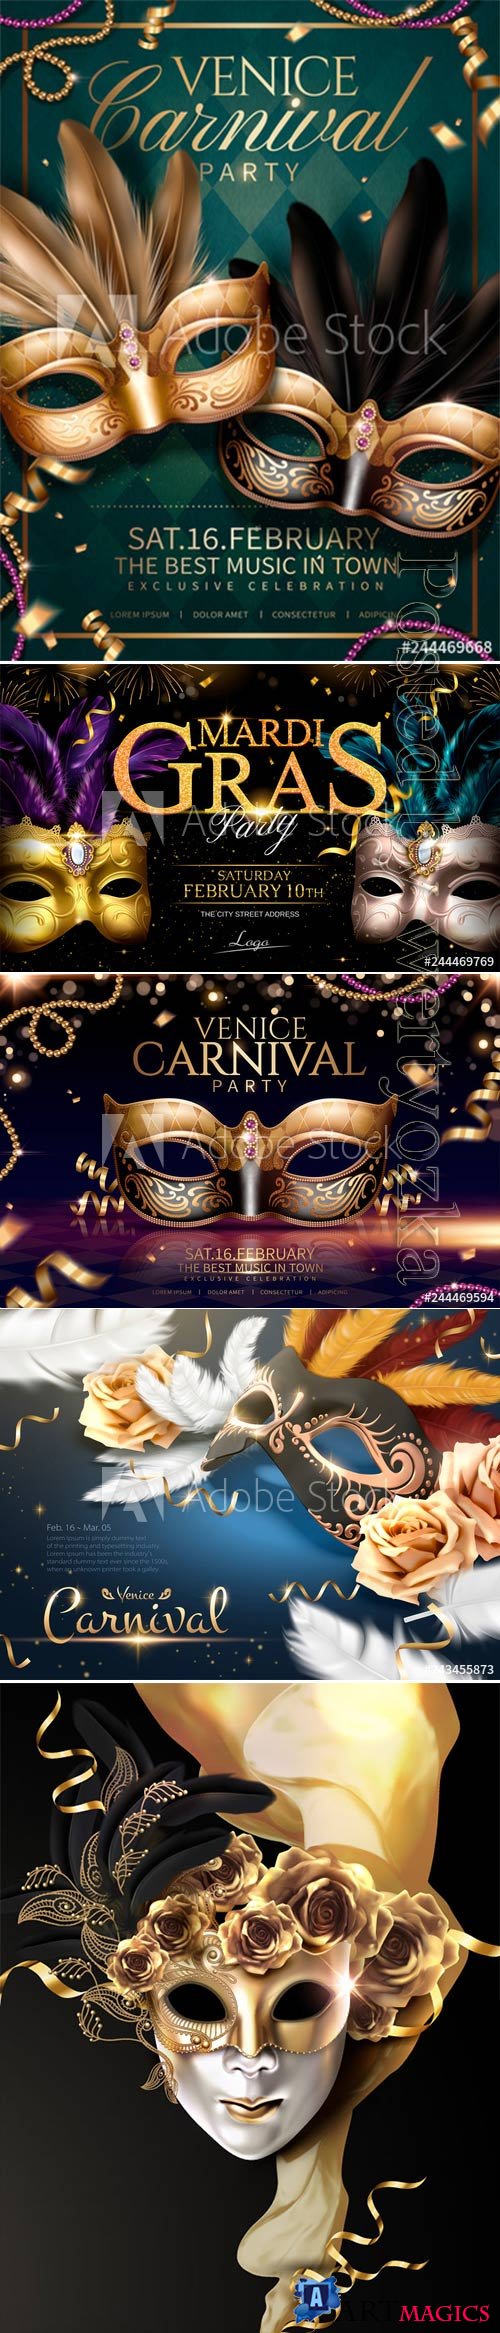 Mardi gras carnival poster, Venice carnival vector design